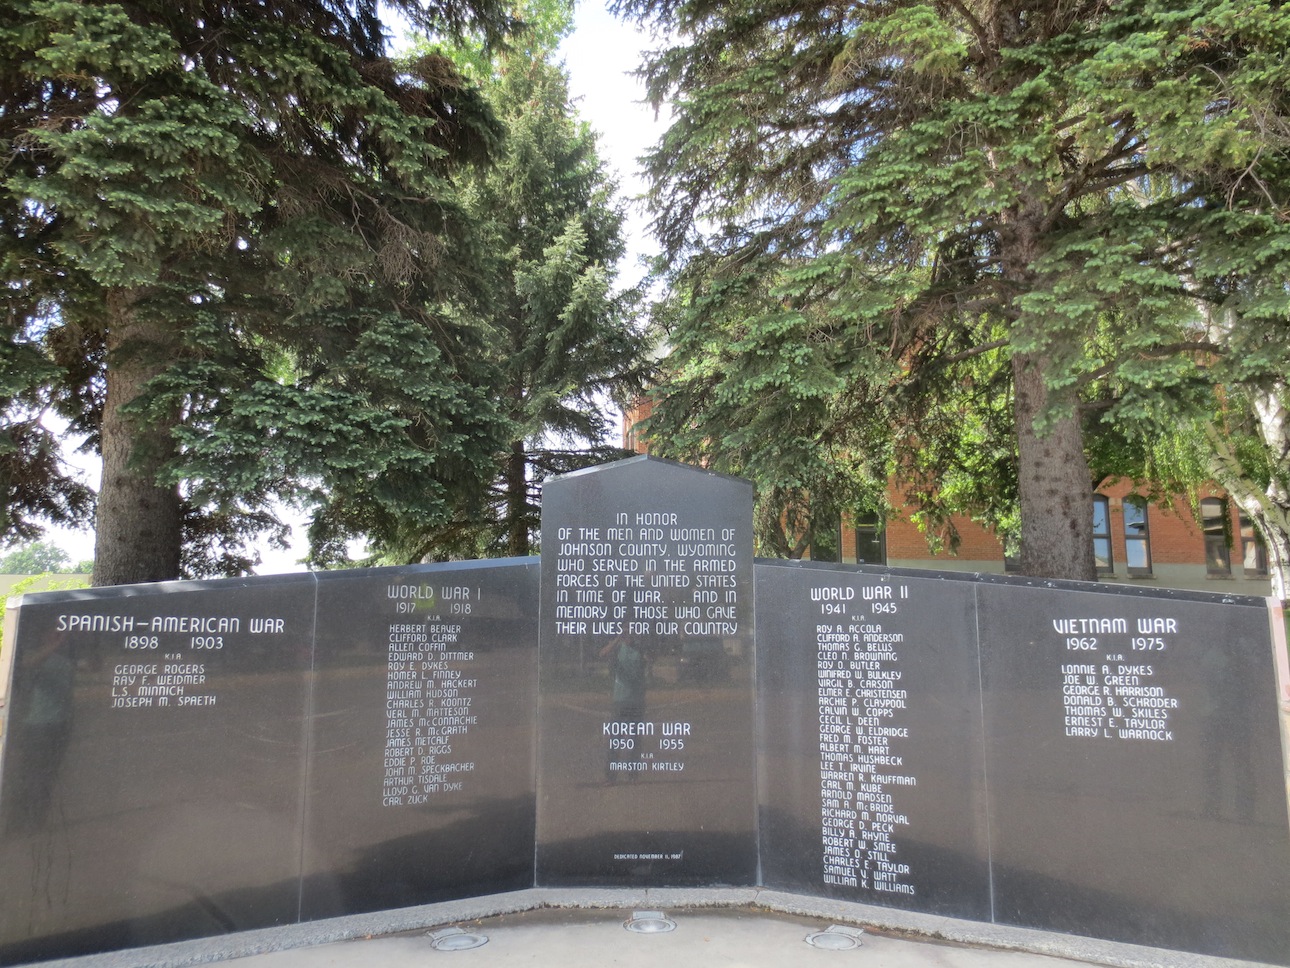 War Memorial for fallen soldiers.